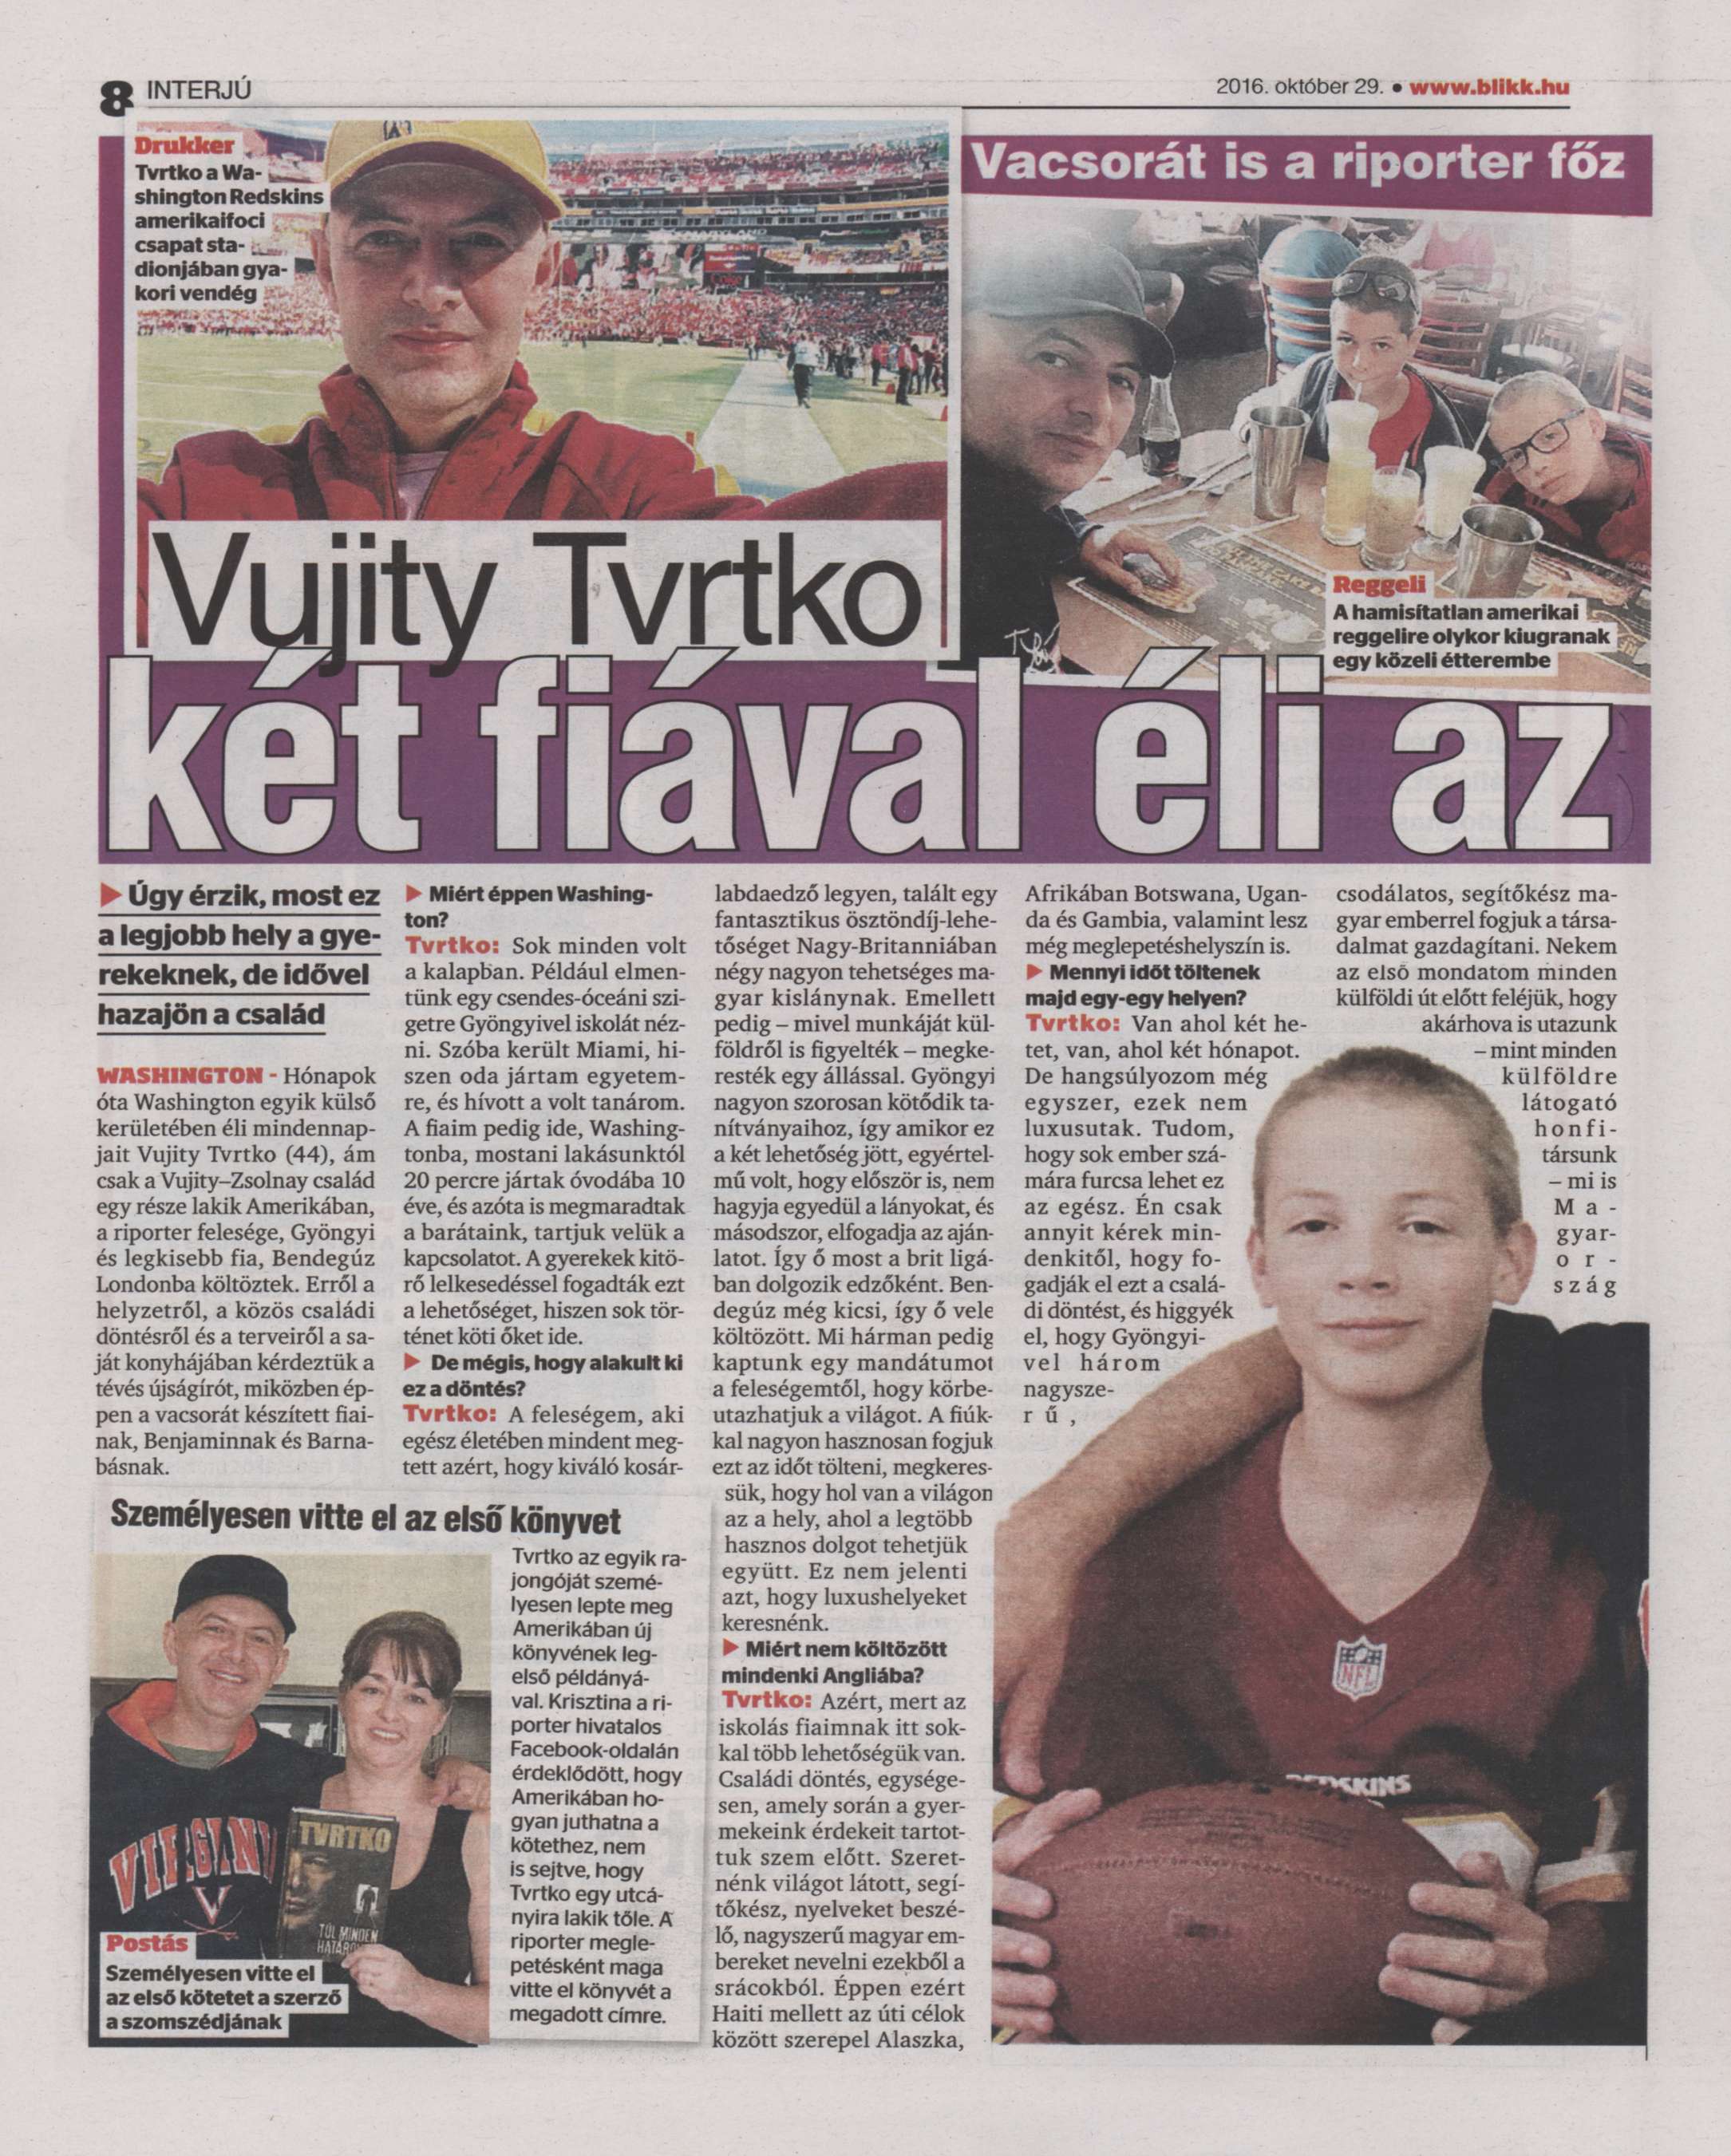 Vujity Tvrtko két fiával éli az amerikai álmot